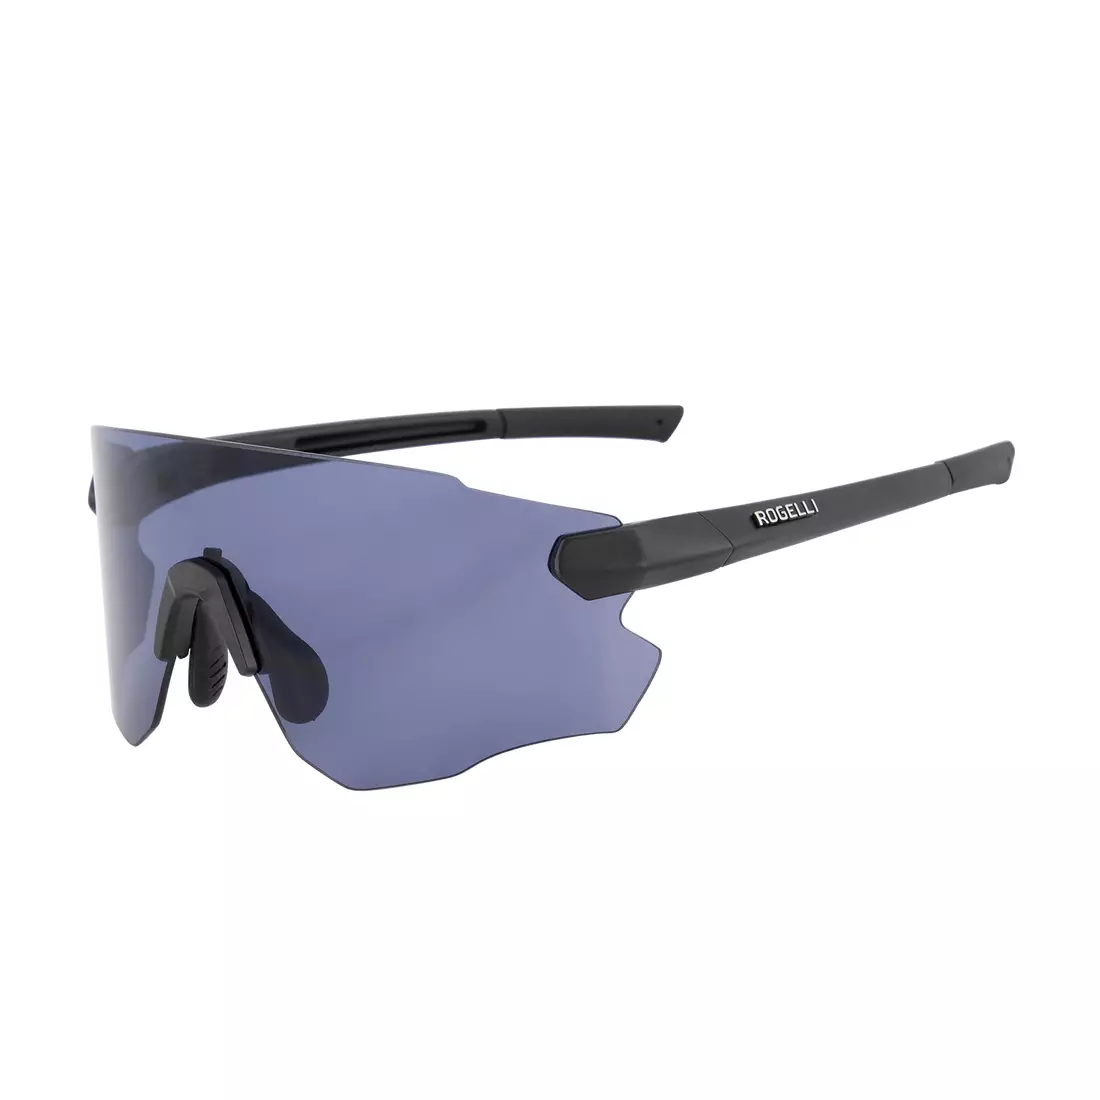 ROGELLI športové okuliare s vymeniteľnými sklami VISTA čierna